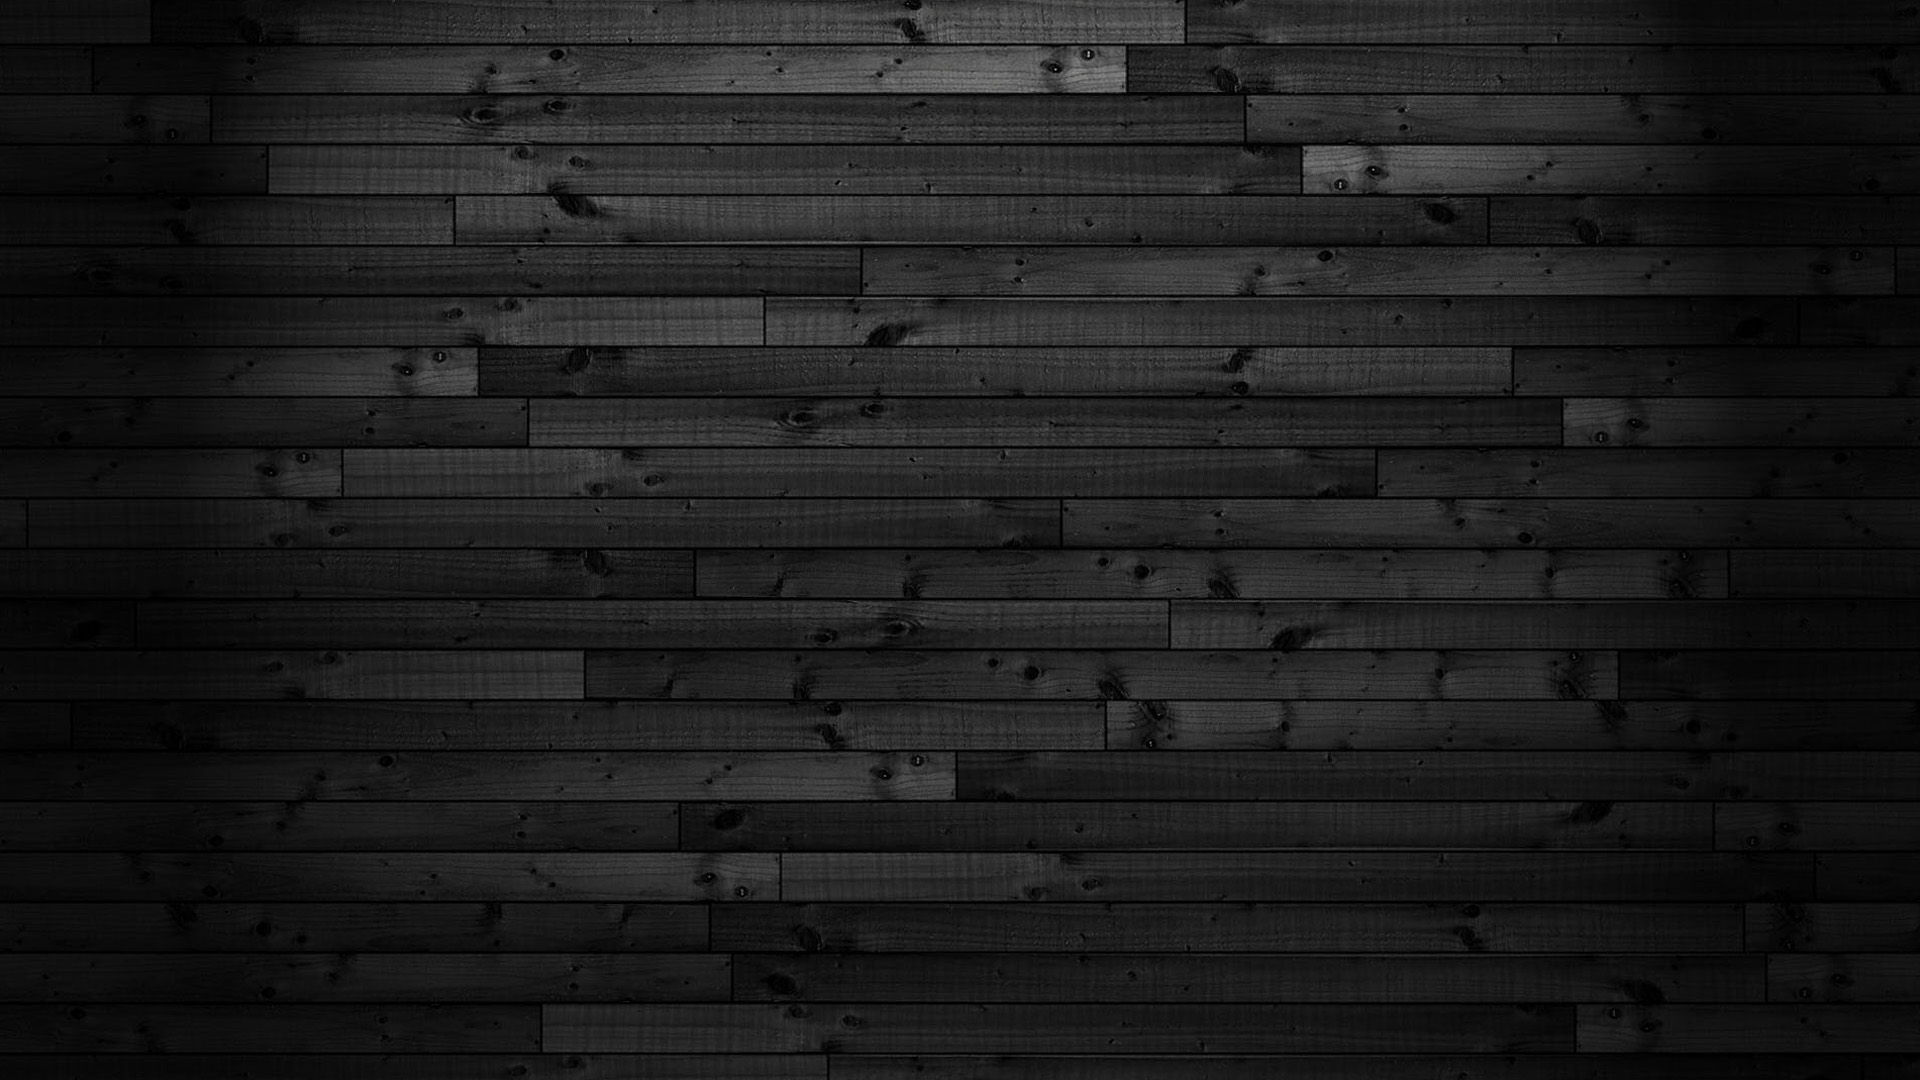 Hình nền gỗ đen: Nếu bạn muốn tạo sự ấn tượng với máy tính của mình, hãy chọn một hình nền gỗ đen lịch lãm. Với thiết kế đậm chất tự nhiên của gỗ đen, hình nền này có thể làm bừng sáng không gian làm việc của bạn cũng như tạo nên một phong cách thời trang hoàn toàn mới.